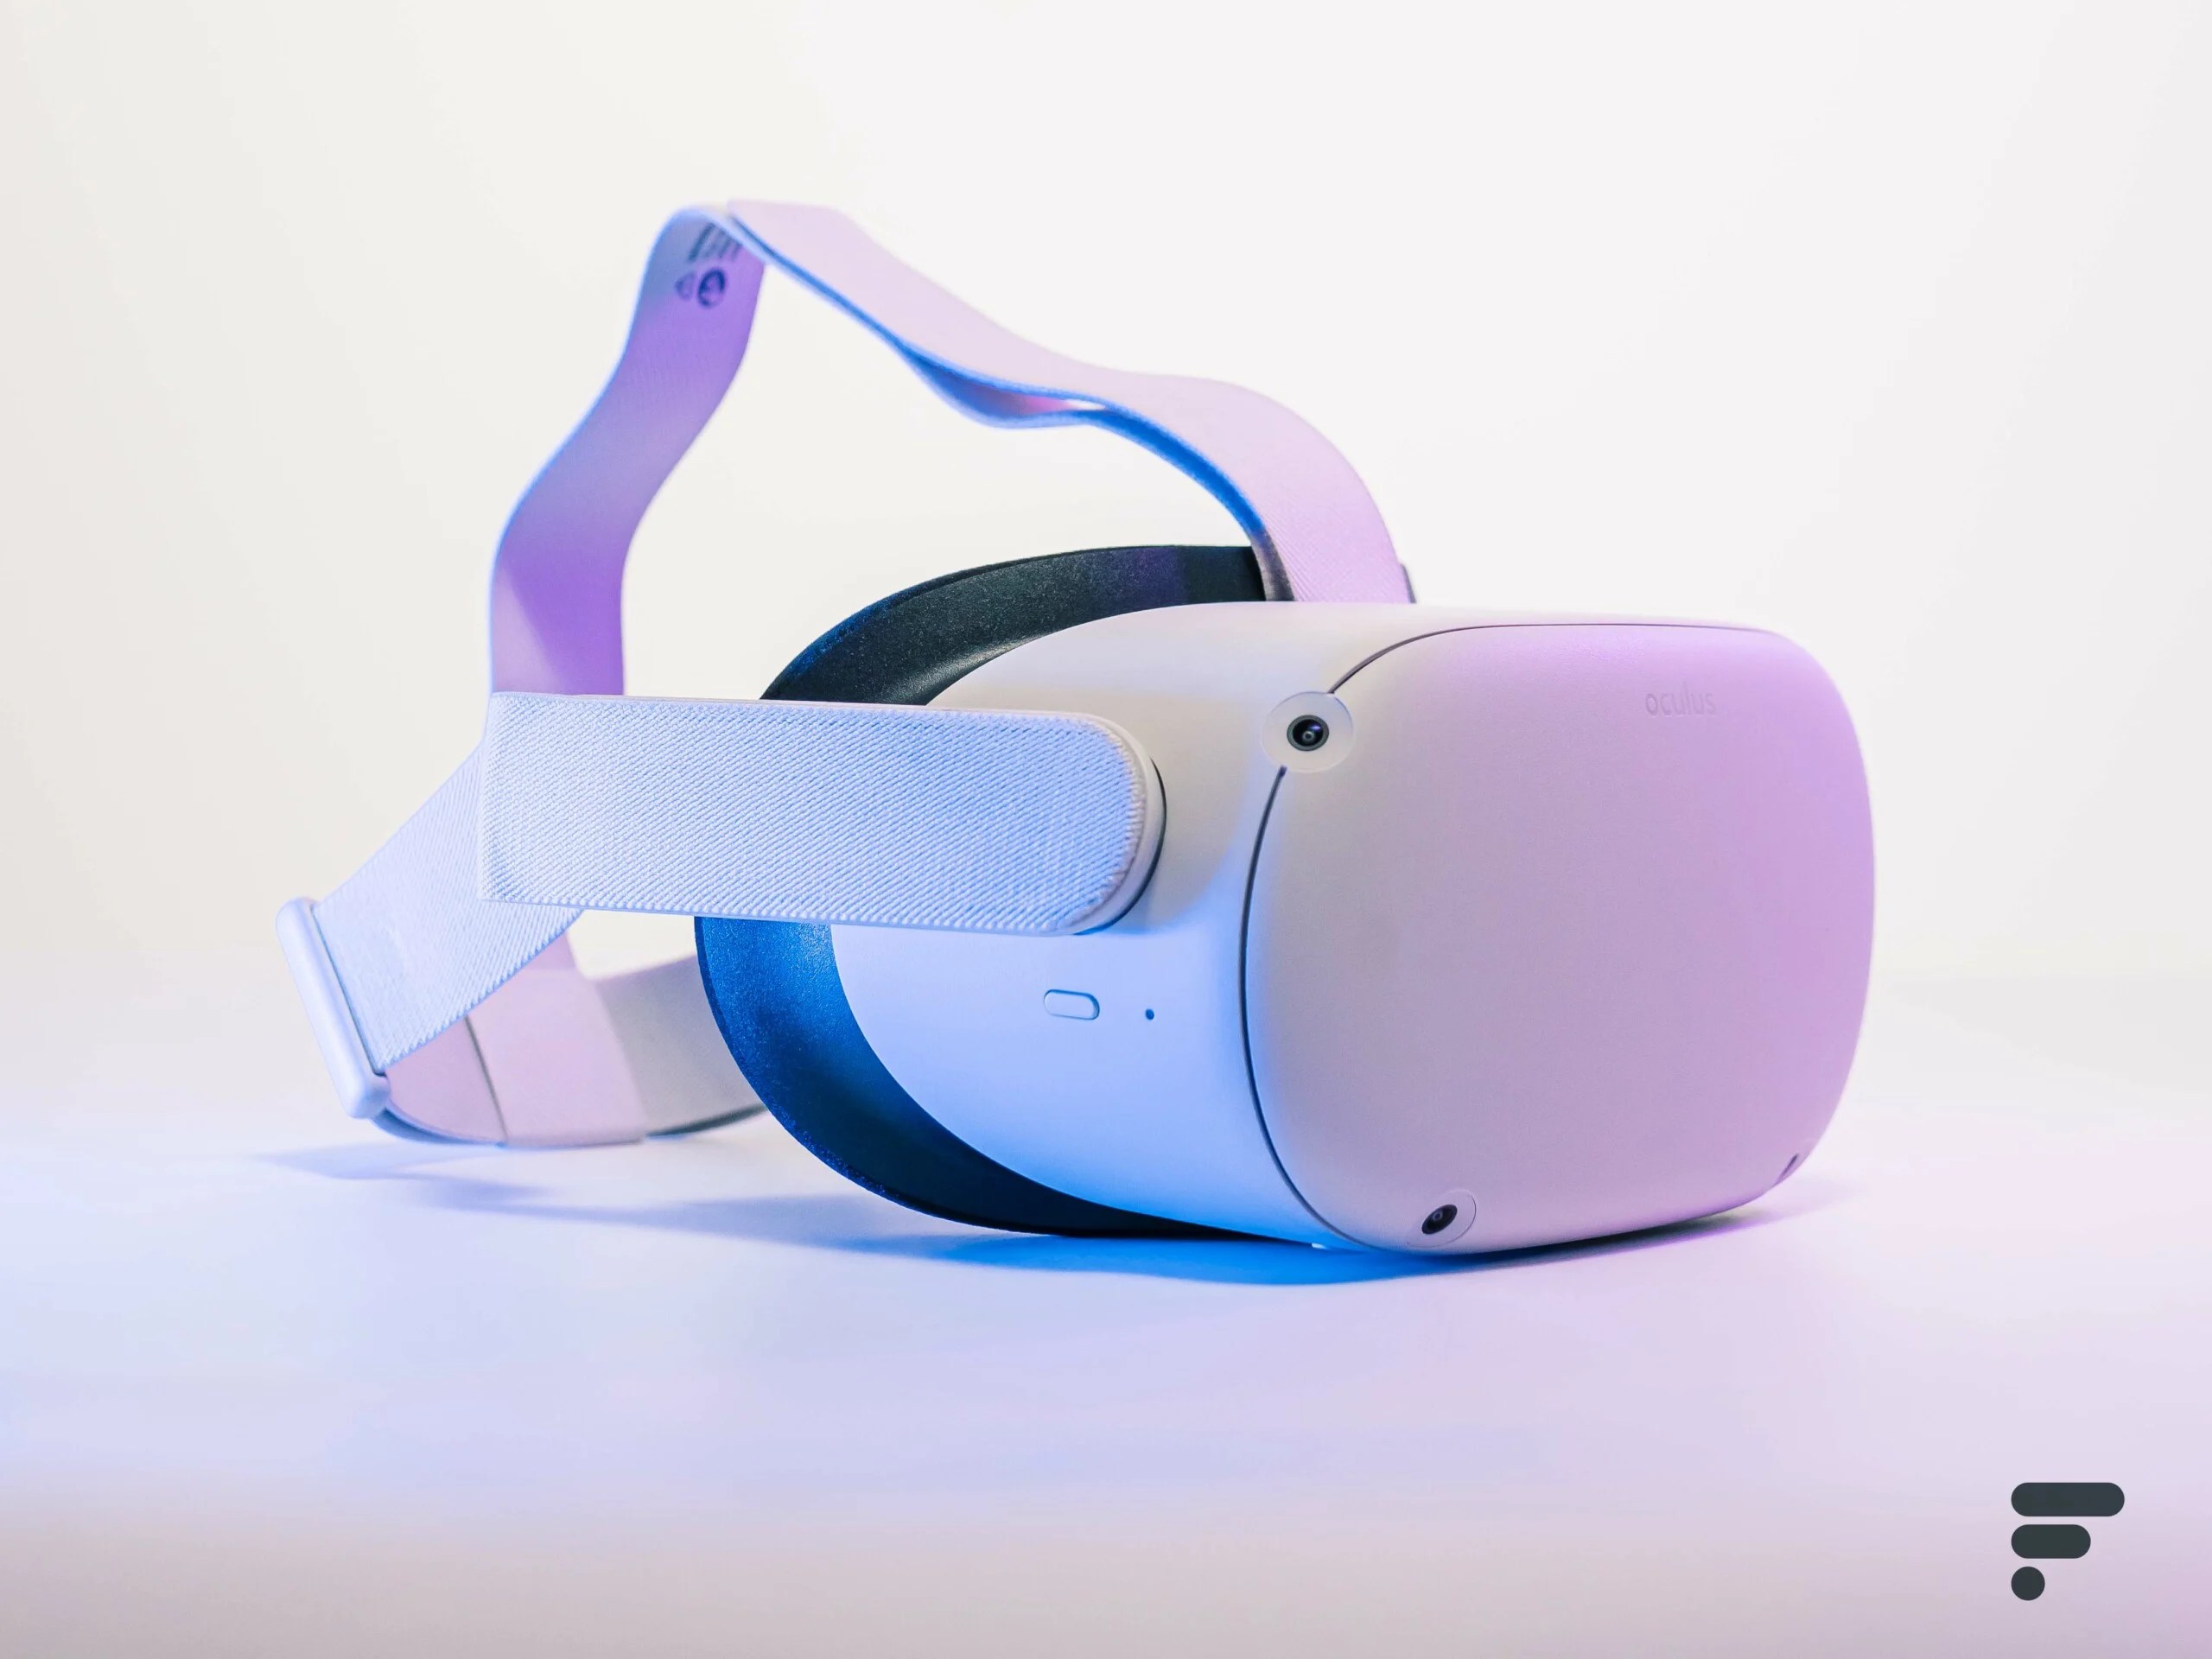 Le célèbre casque VR Oculus Quest 2 est de retour à bon prix grâce à ce code promo